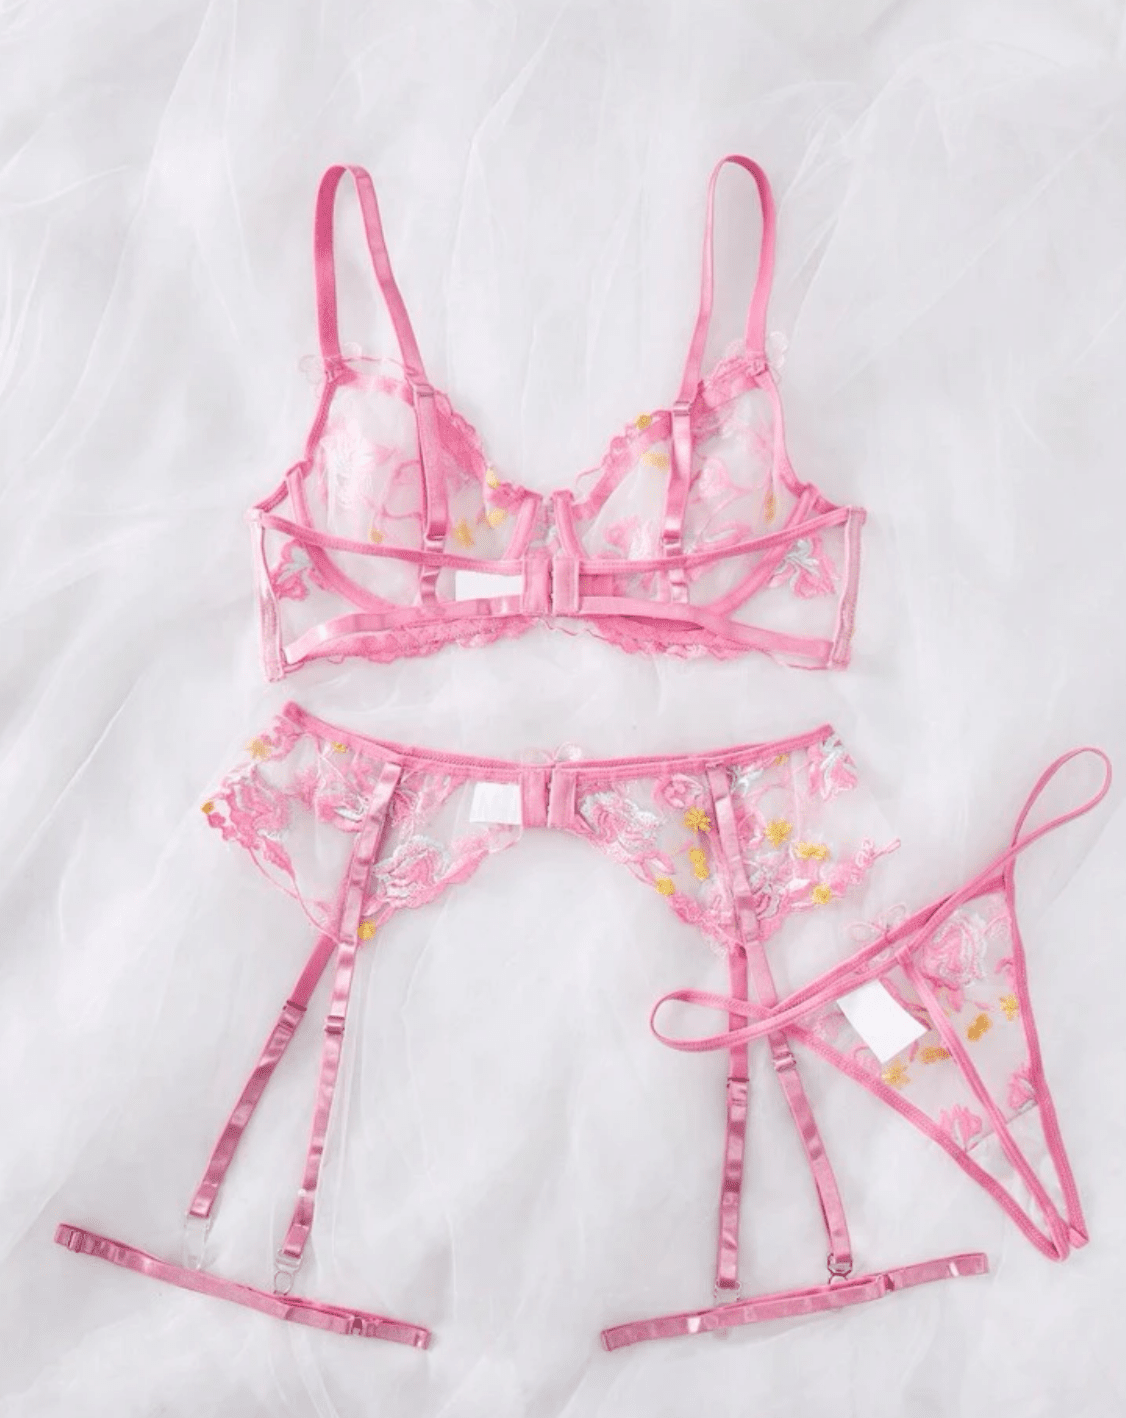 soft pink lingerie garter set